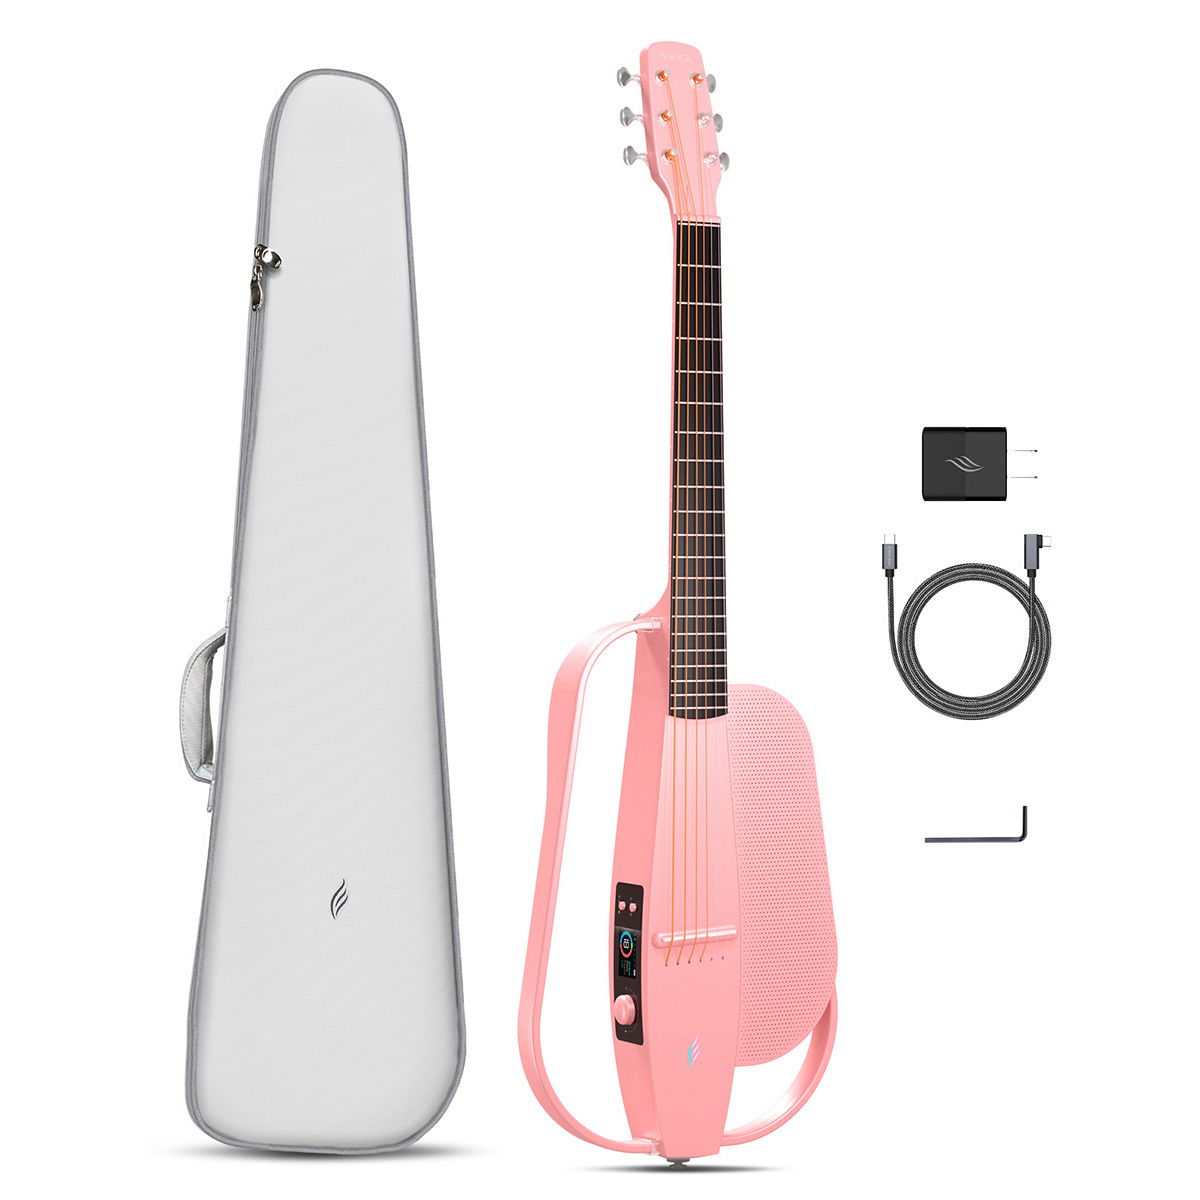 Enya NEXG SE PINK(ピンク) スマートギター アコースティックギター 